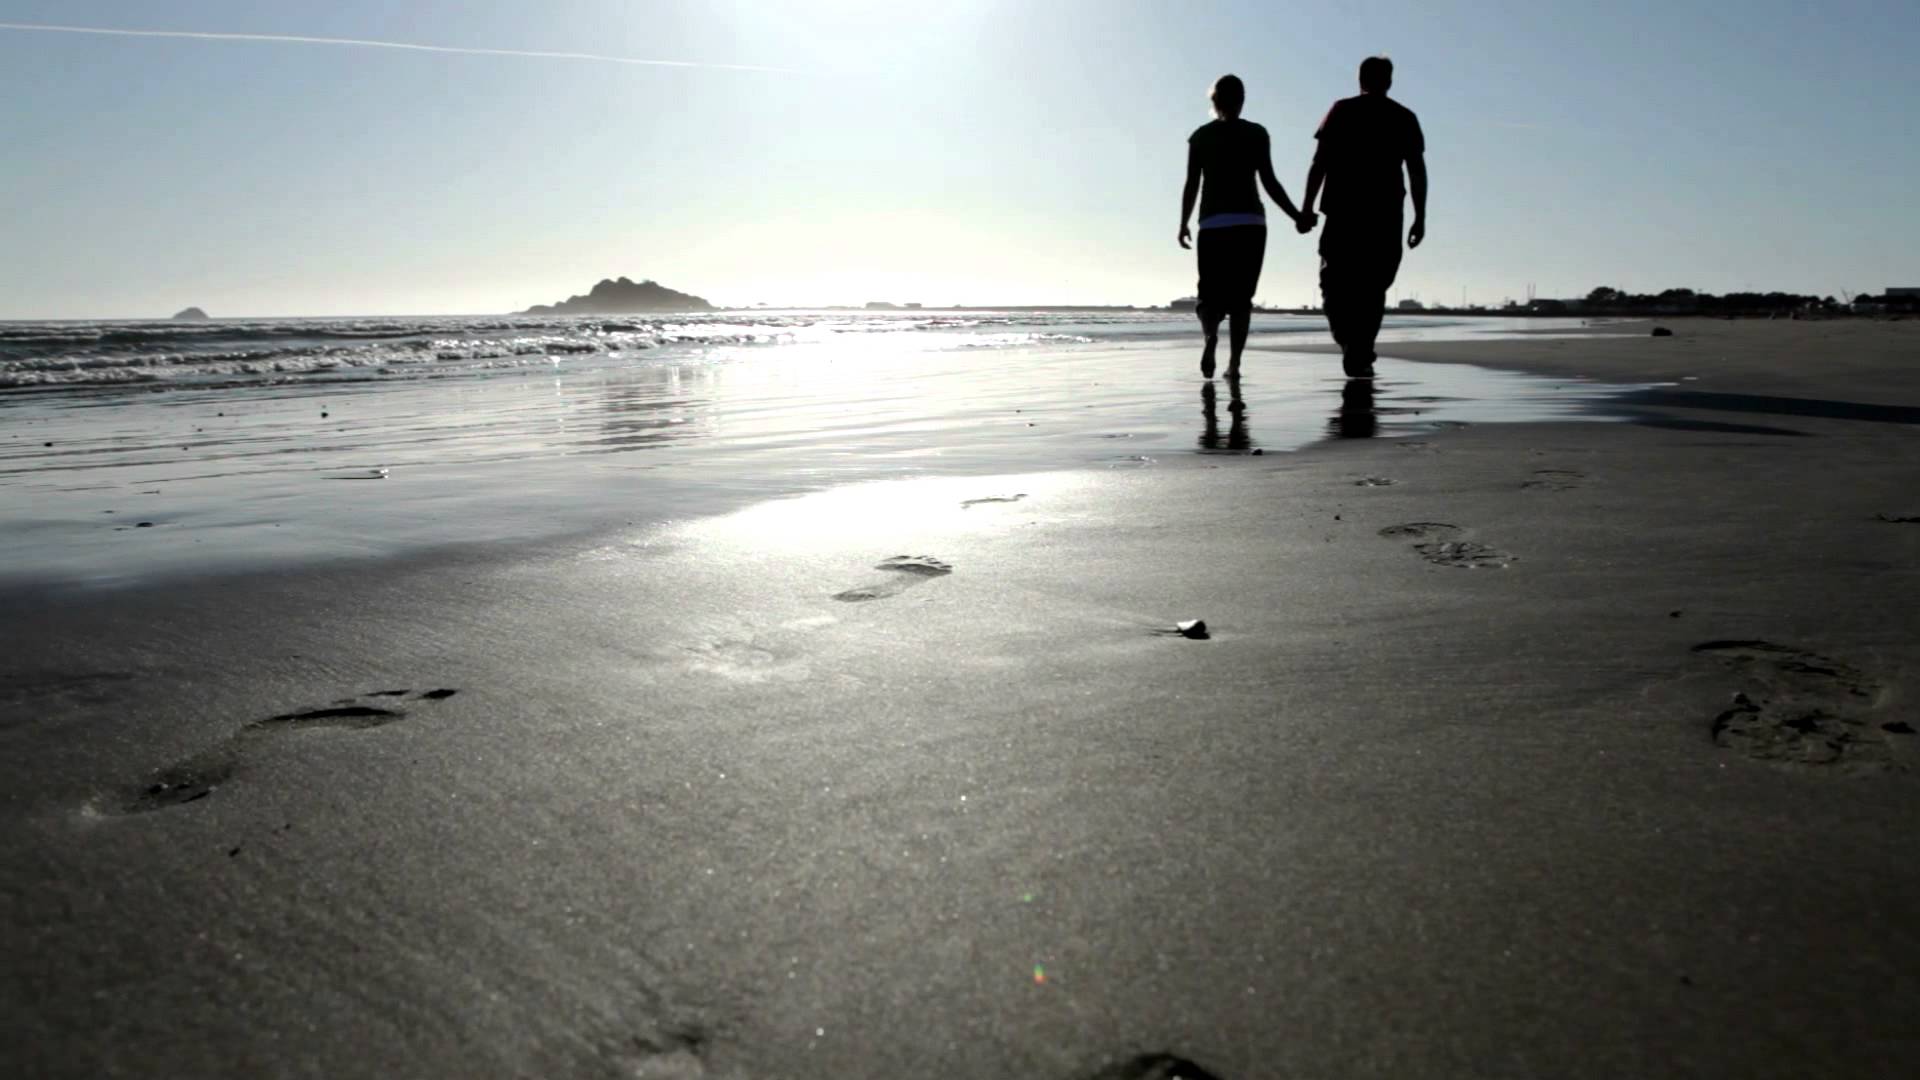 Μια βόλτα στην παραλία μειώνει σημαντικά το στρες